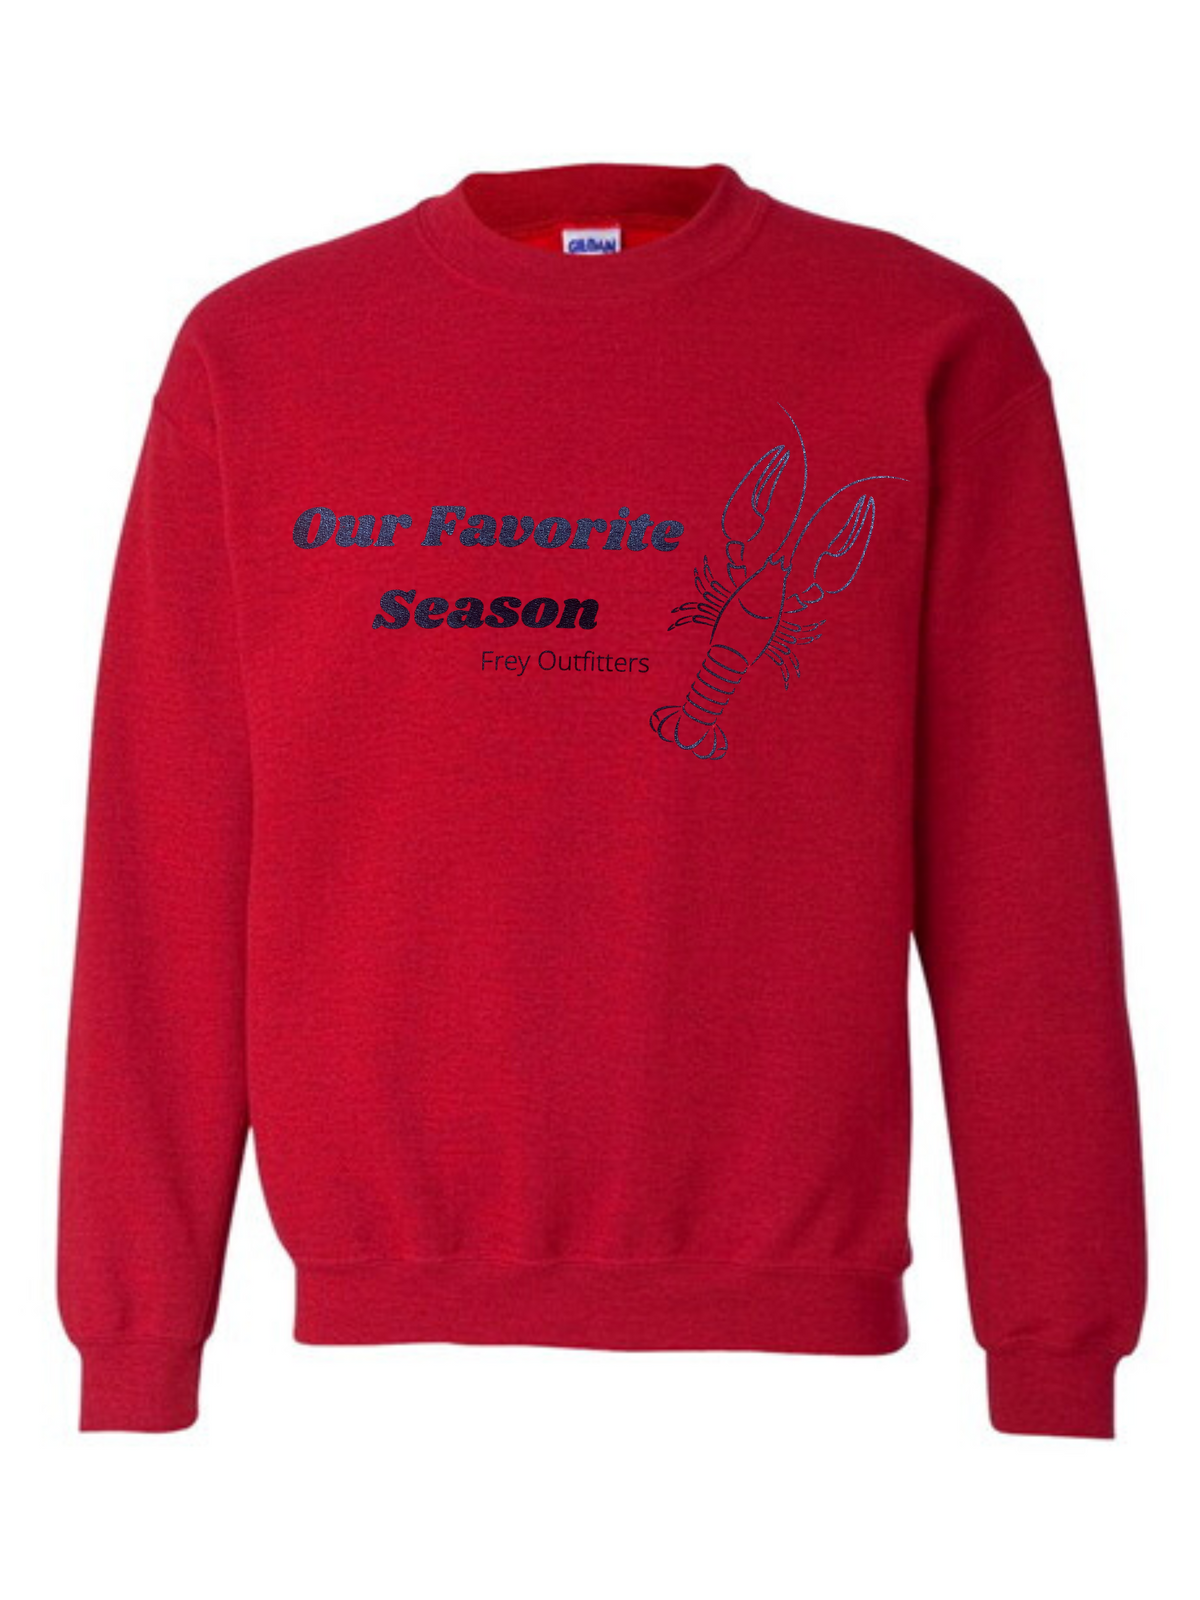 Women's "Our Favorite Season" Red Sweatshirt